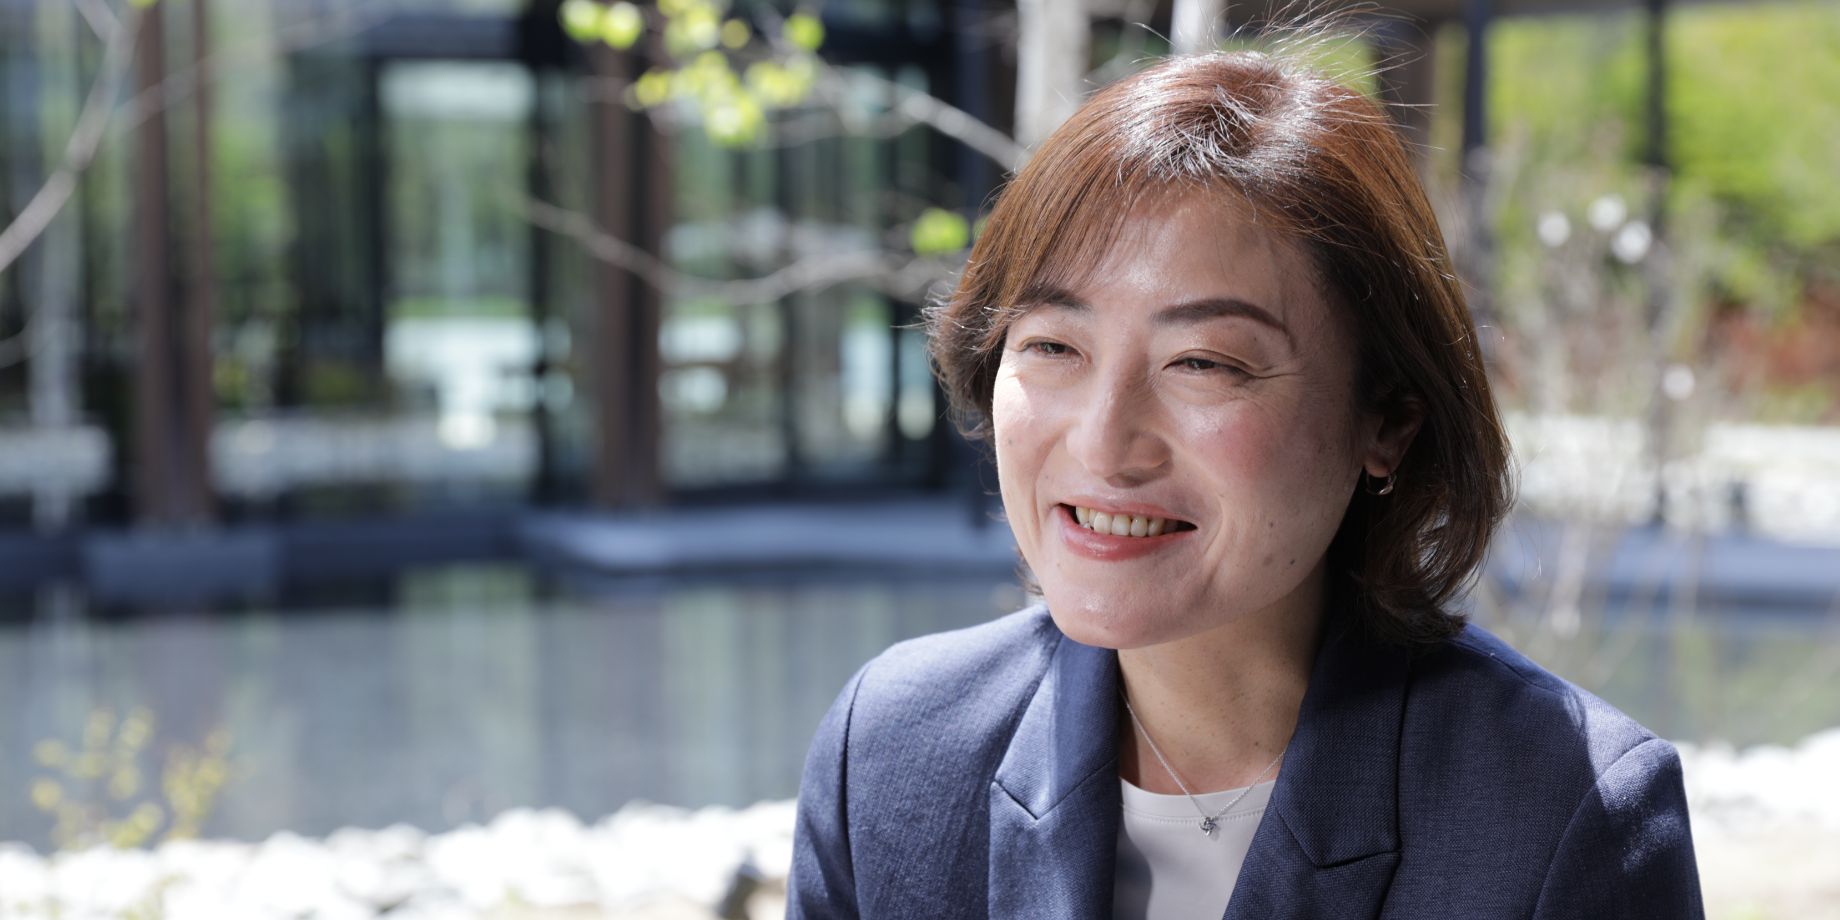 Megumi Hara, General Manager of Hotel Indigo Karuizawa